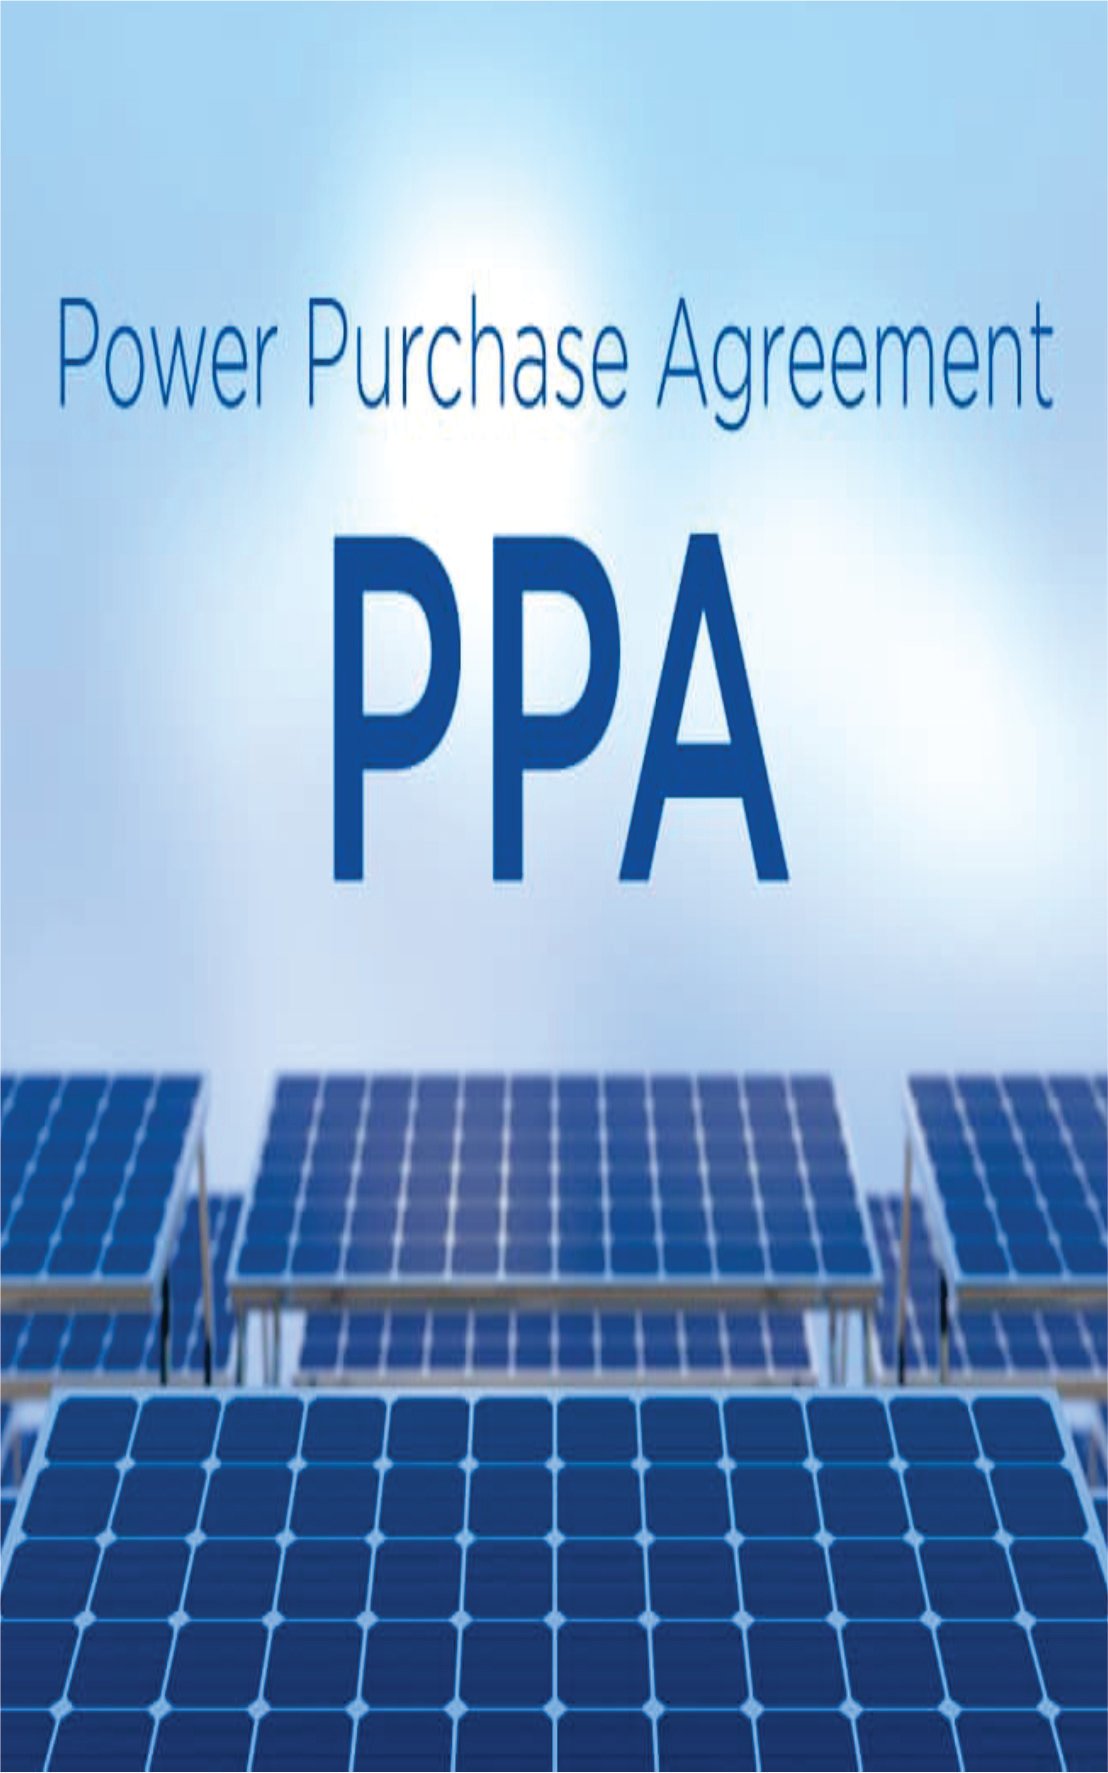 Hợp đồng mua bán điện PPA